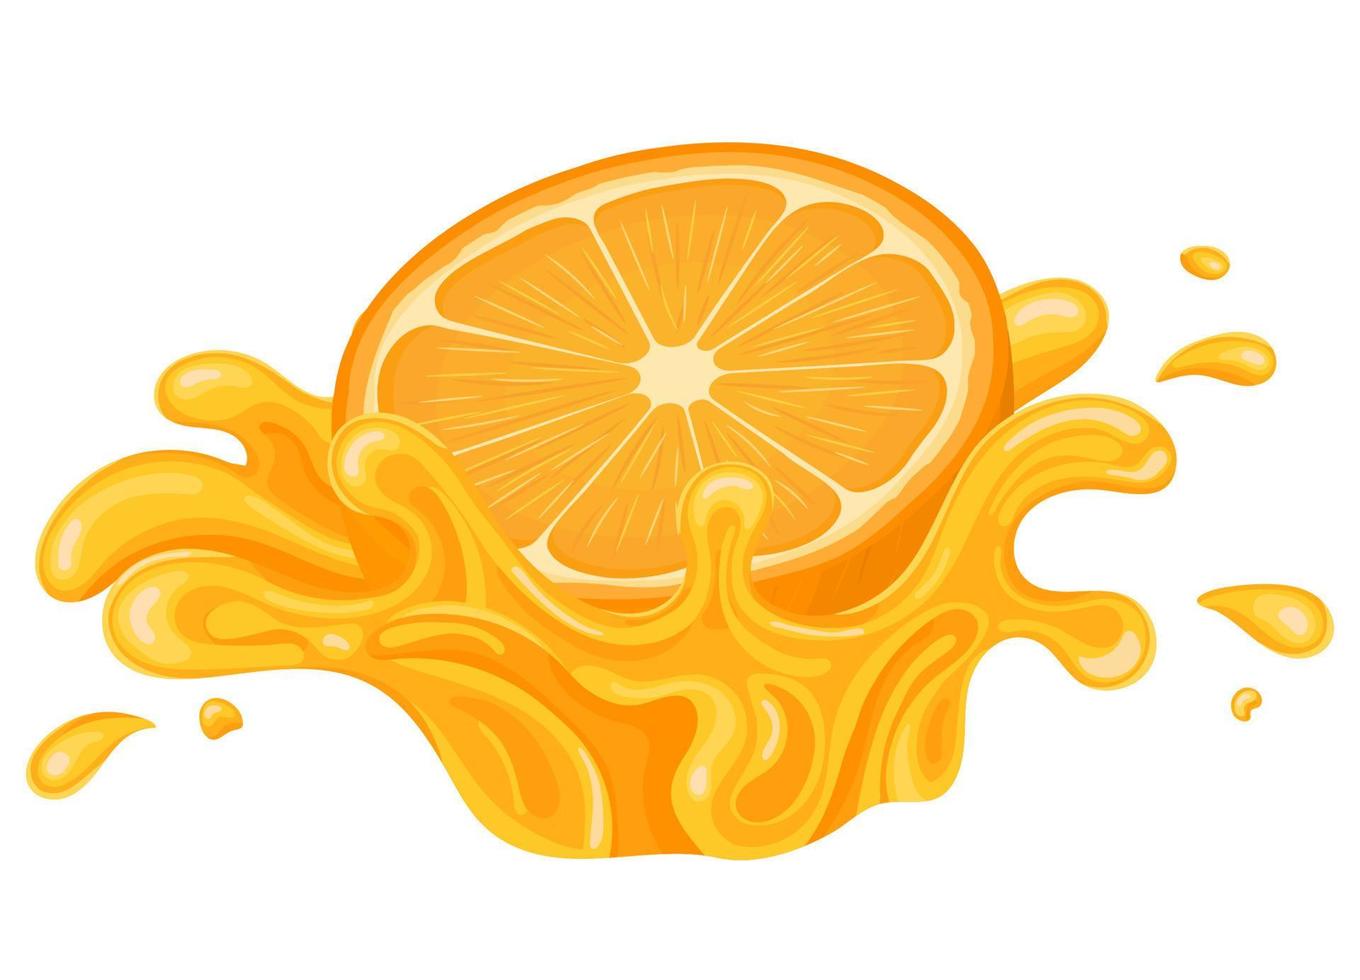 verse heldere sinaasappel, mandarijn of tagerine sap splash burst geïsoleerd op een witte achtergrond. zomer vruchtensap. cartoon-stijl. vectorillustratie voor elk ontwerp. vector